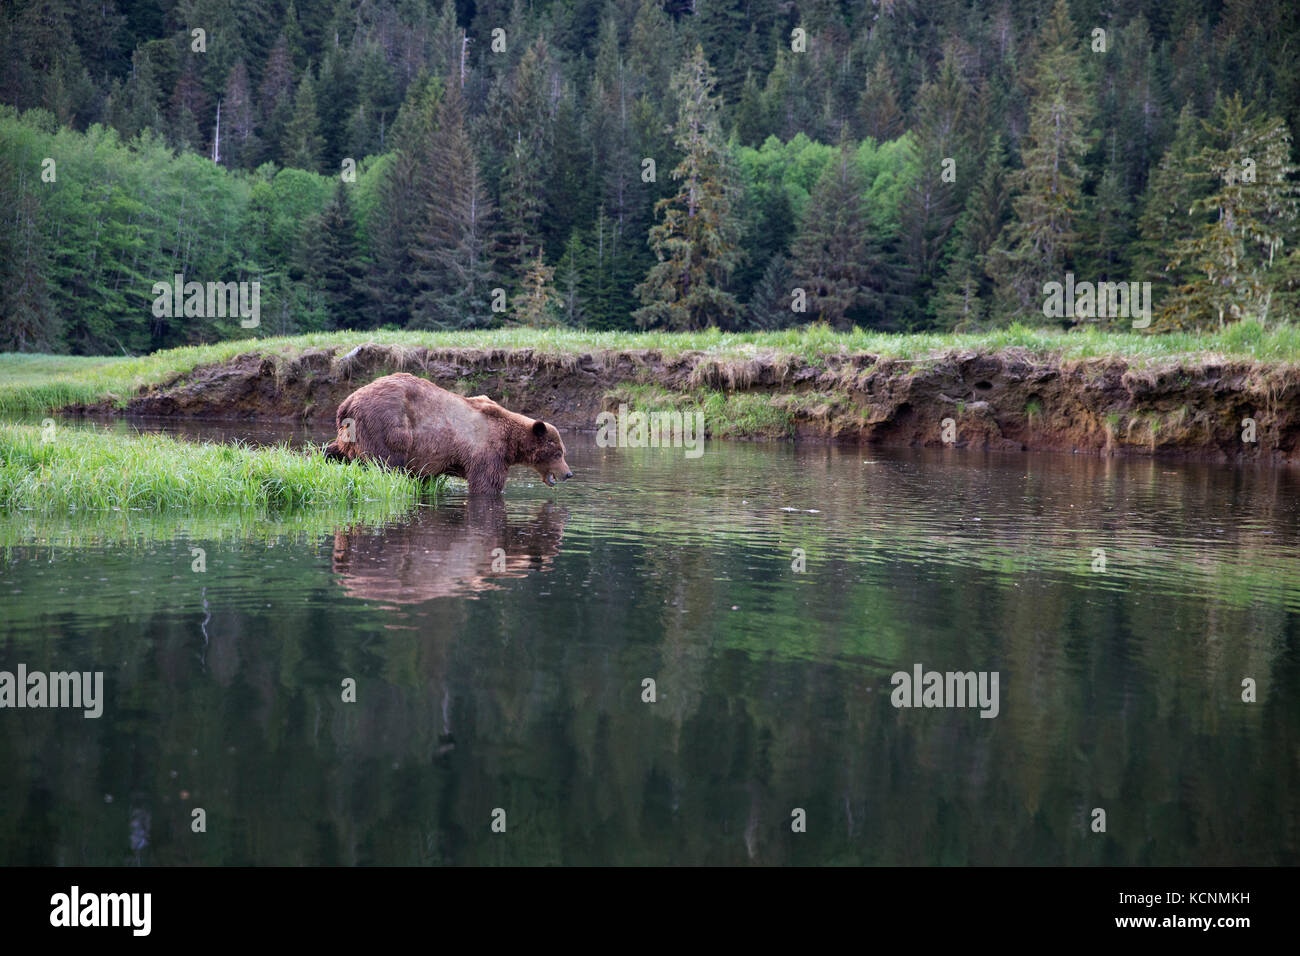 Orso grizzly (Ursus arctos horriblis), grande graffiato maschio, enterring acqua, kwinimass estuario, British Columbia, Canada. Foto Stock